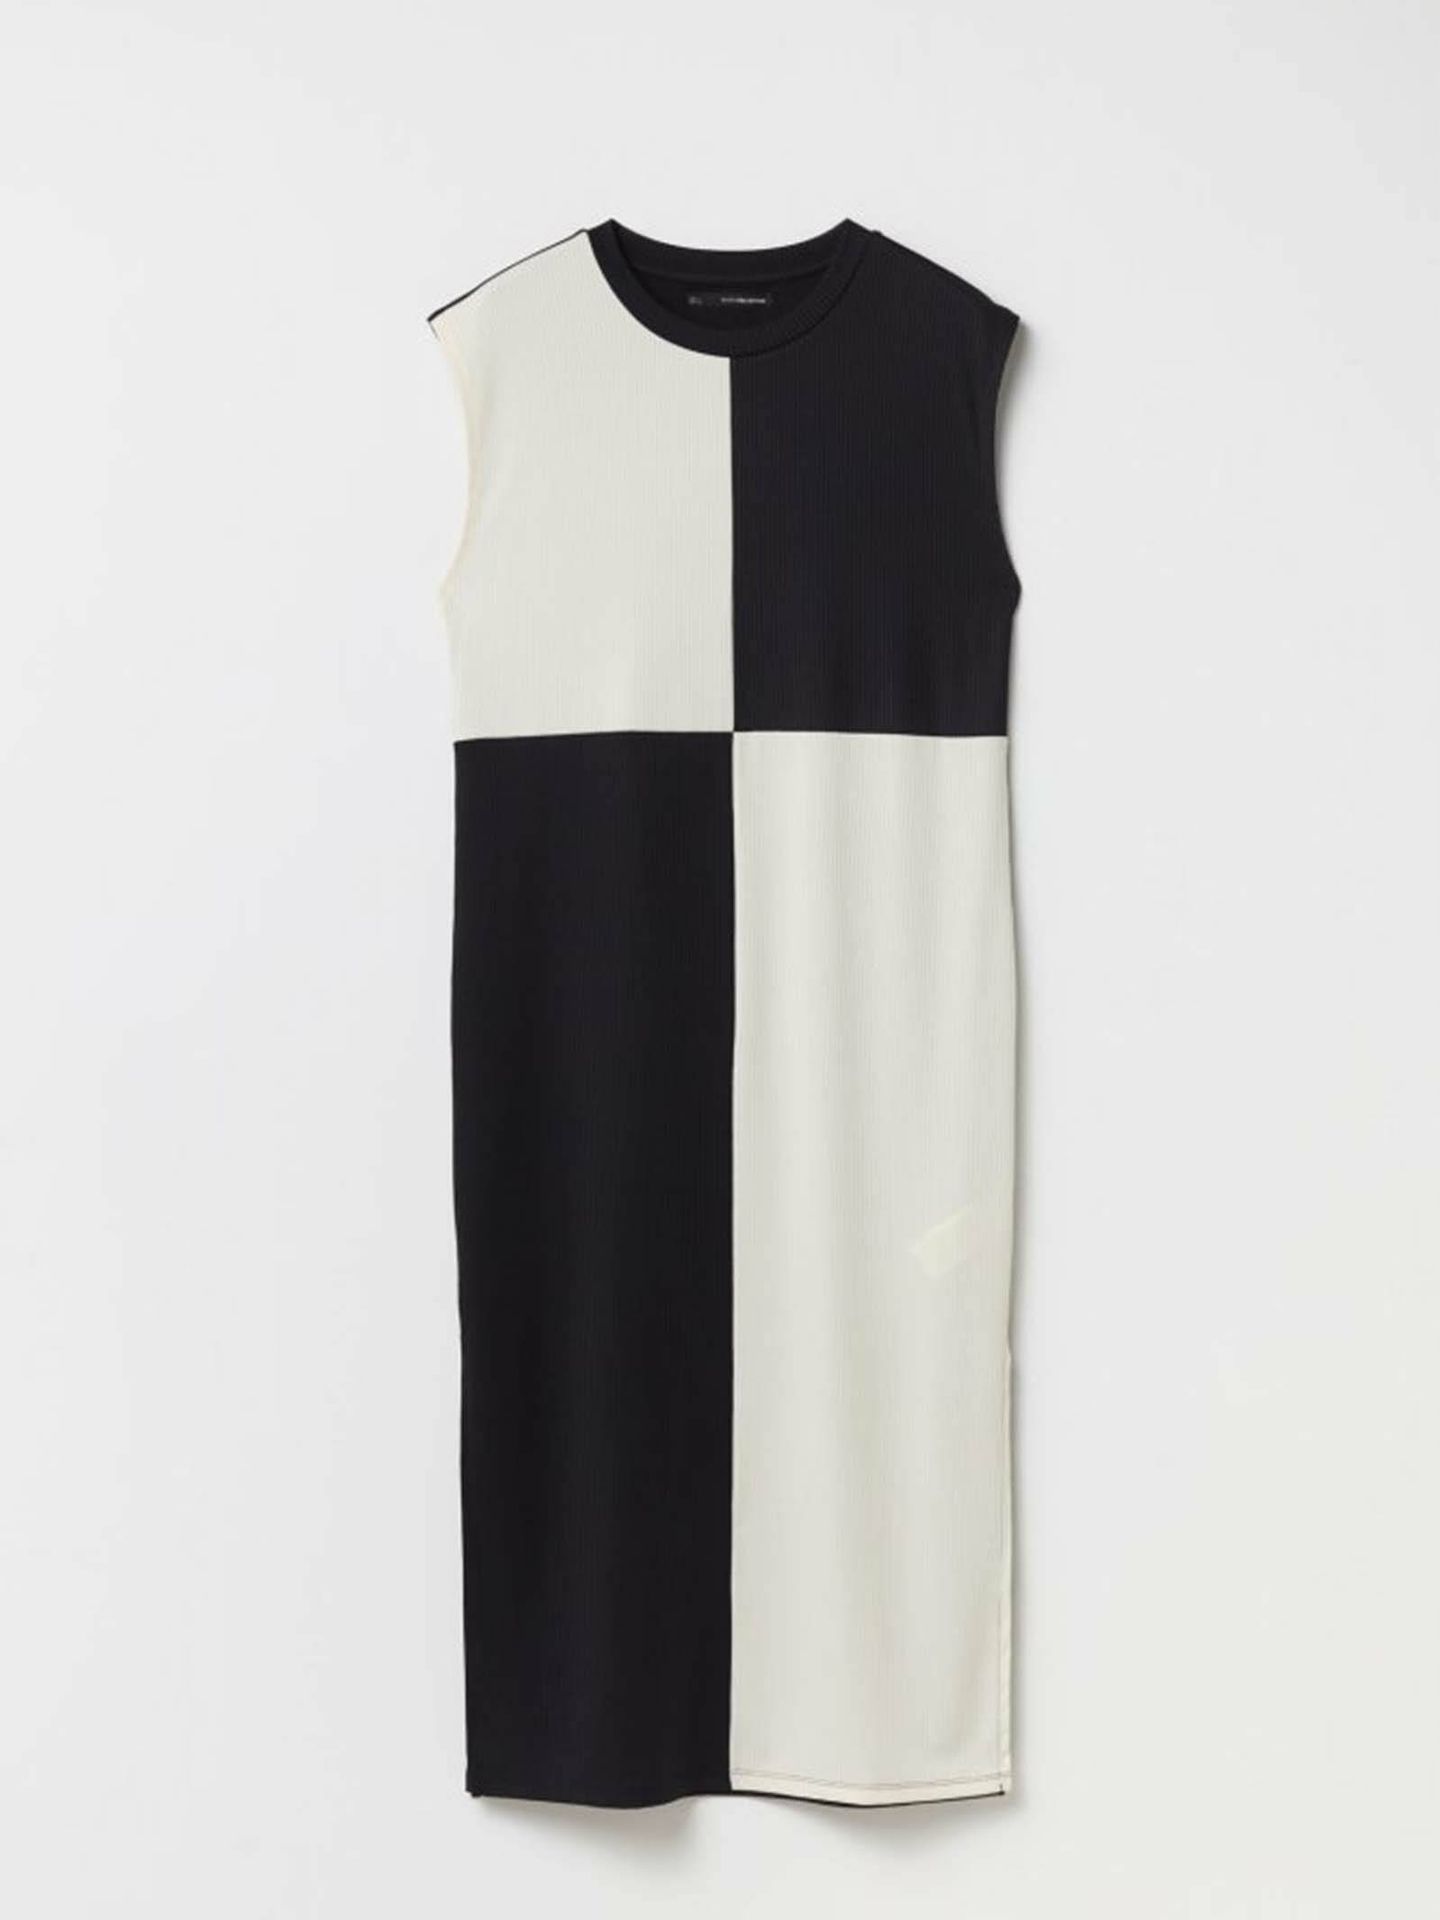 Bicolor como el Letizia y de una de las marcas favoritas de Leonor, el vestido que arrasa en ventas este verano. (Sfera/Cortesía)